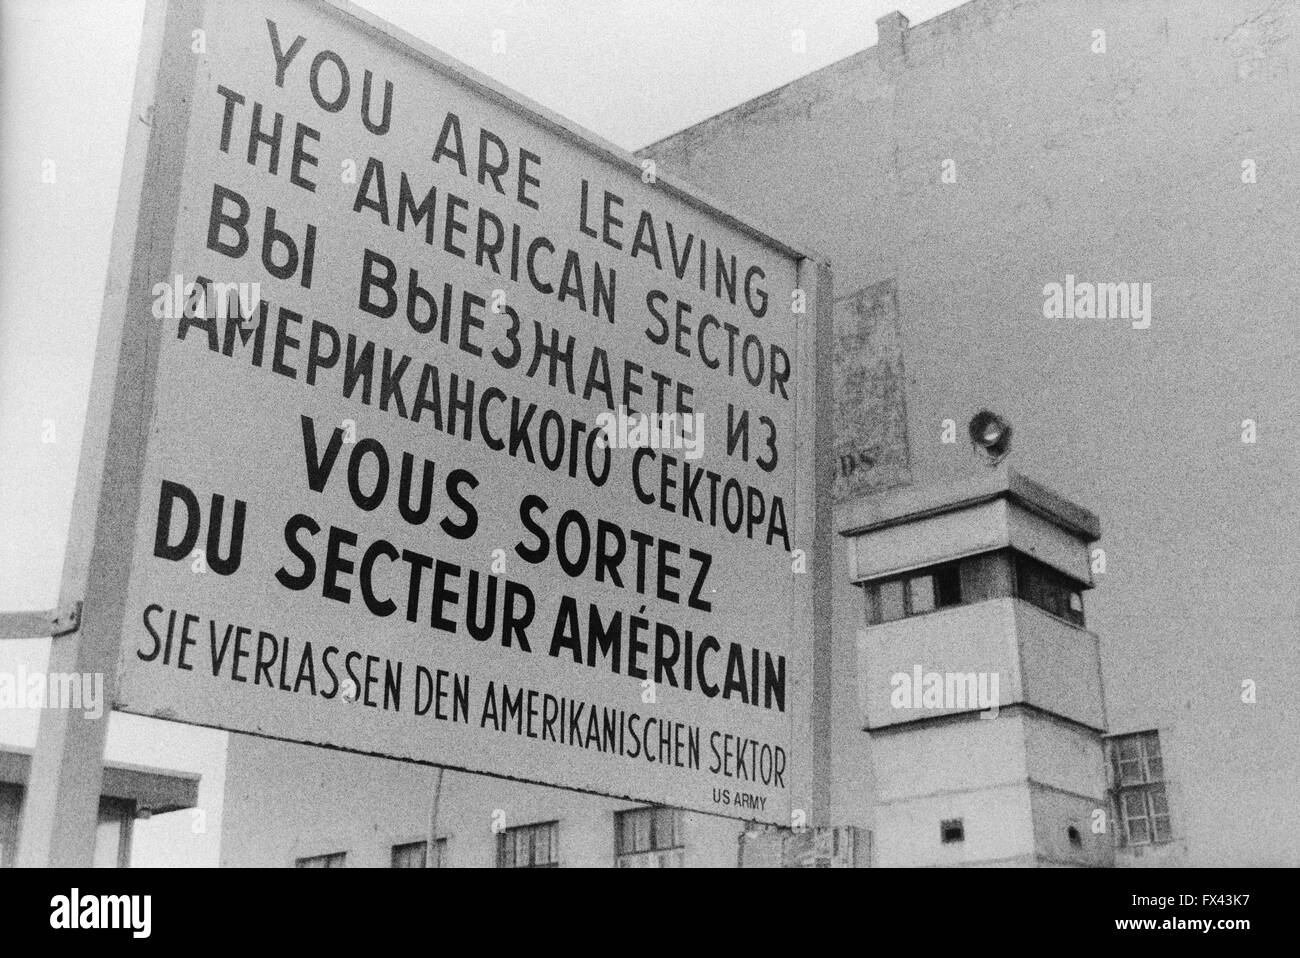 Archiv-Bild des Checkpoint Charlie Zeichen nahe dem Potsdamer Platz, Berlin, Deutschland, März 1994 "Sie verlassen den amerikanischen Sektor" "Vous Sortez du Secteur Americain" "Sie Verlassen Den Amerikanischen Sektor", mit Wachturm Stockfoto